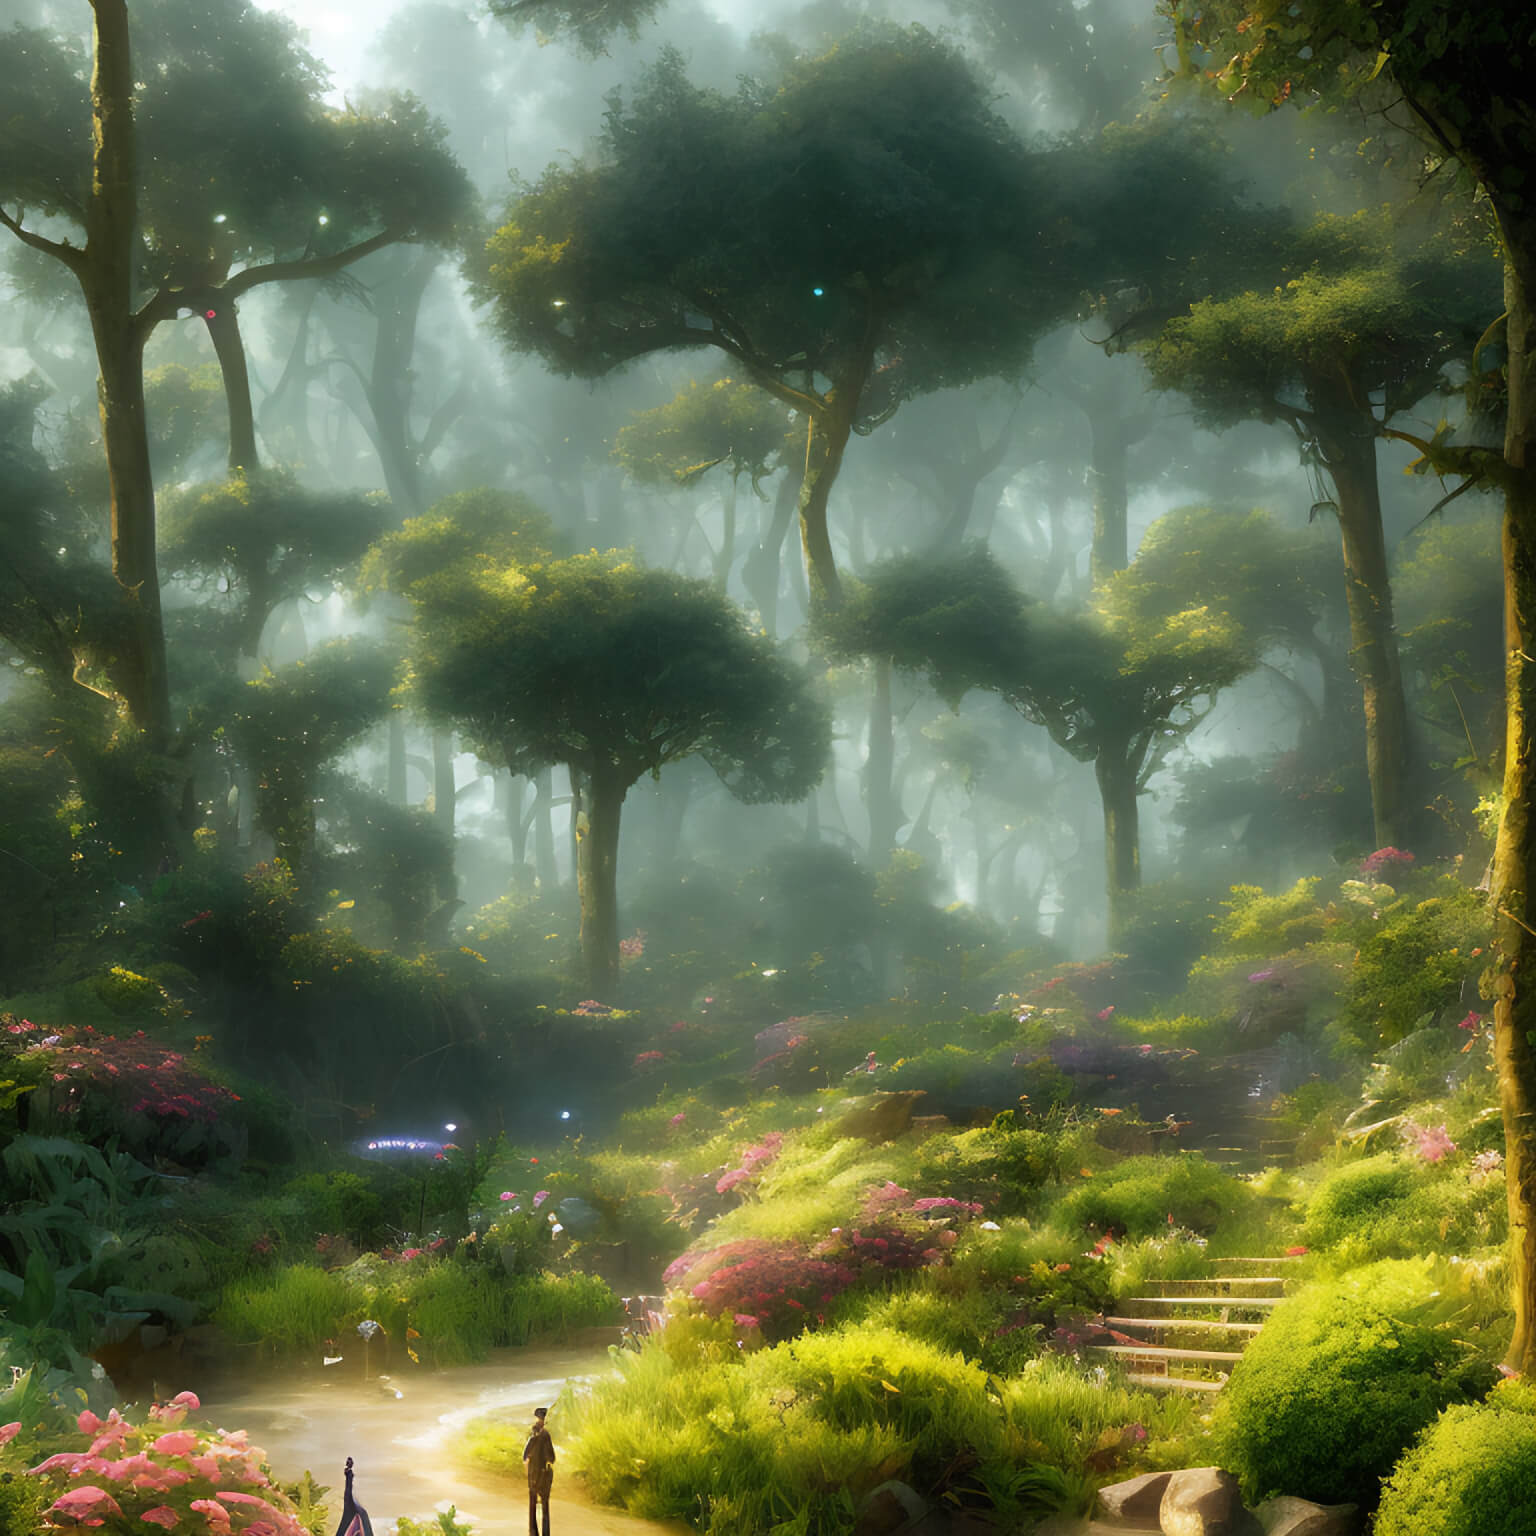 Ein KI Bild von einem Fantasy Wald mit leichtem Nebel